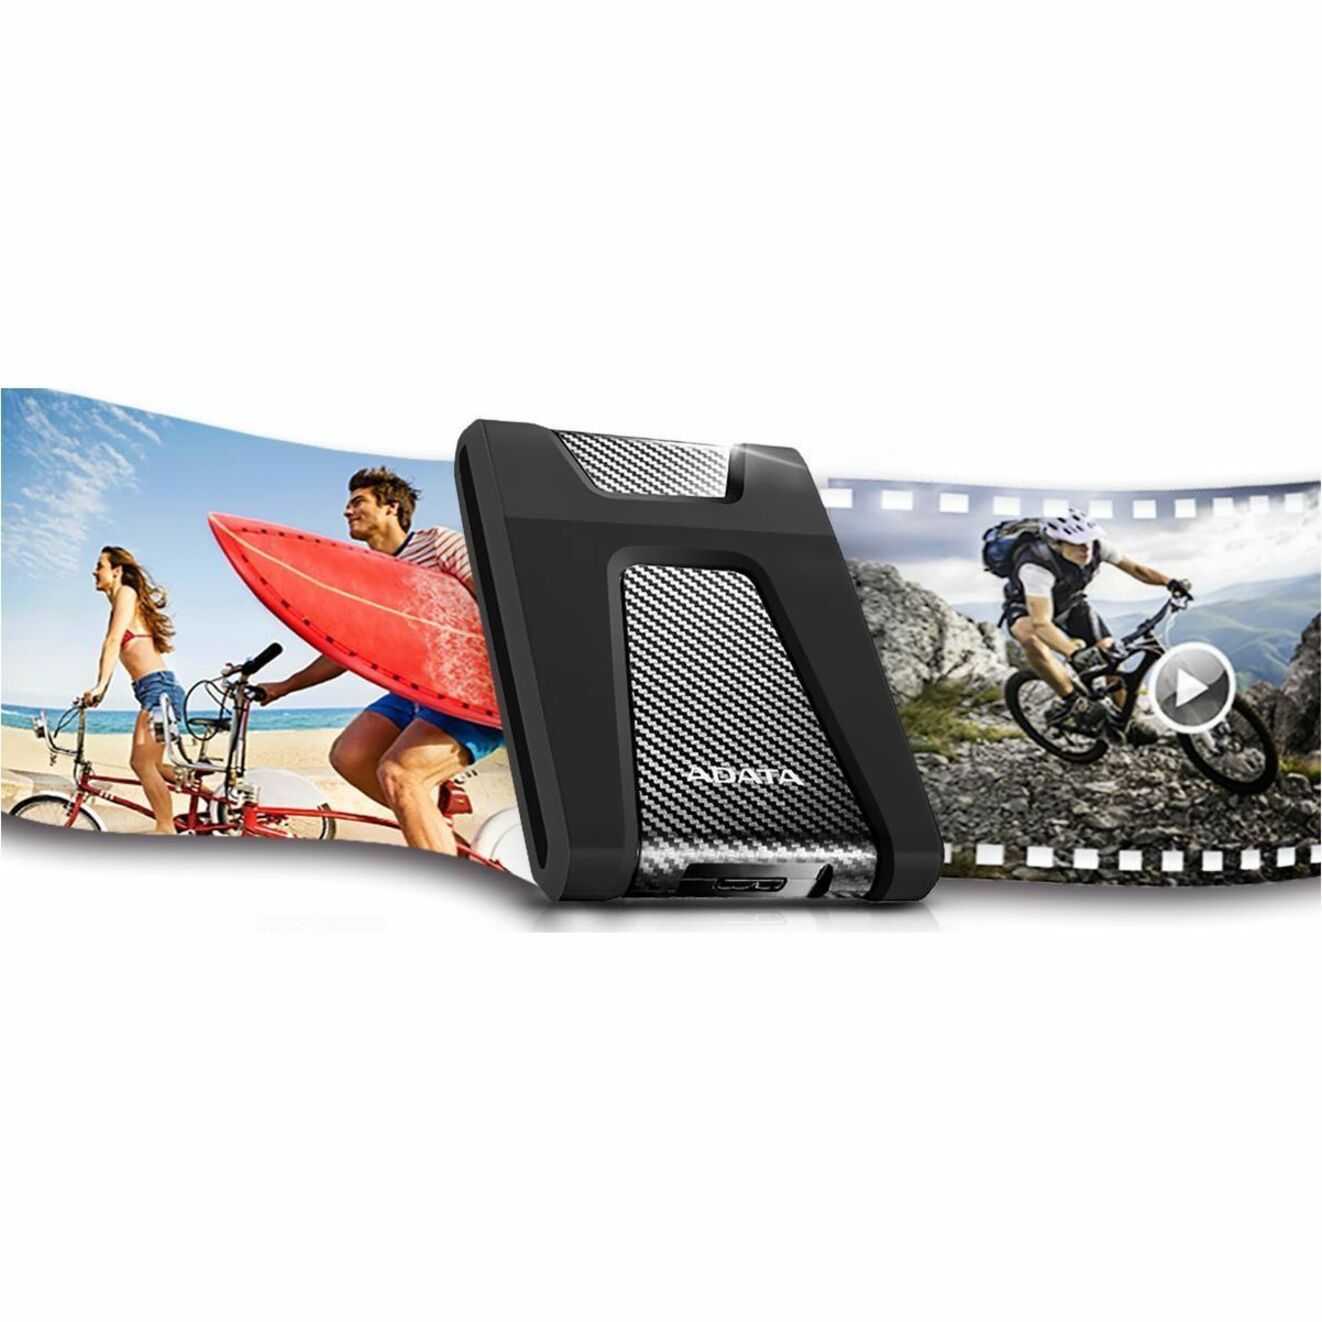 Adata DashDrive Durable HD650 AHD650-1TU31-CBK 1 TB Portable Hard Drive - 2.5" External - Black